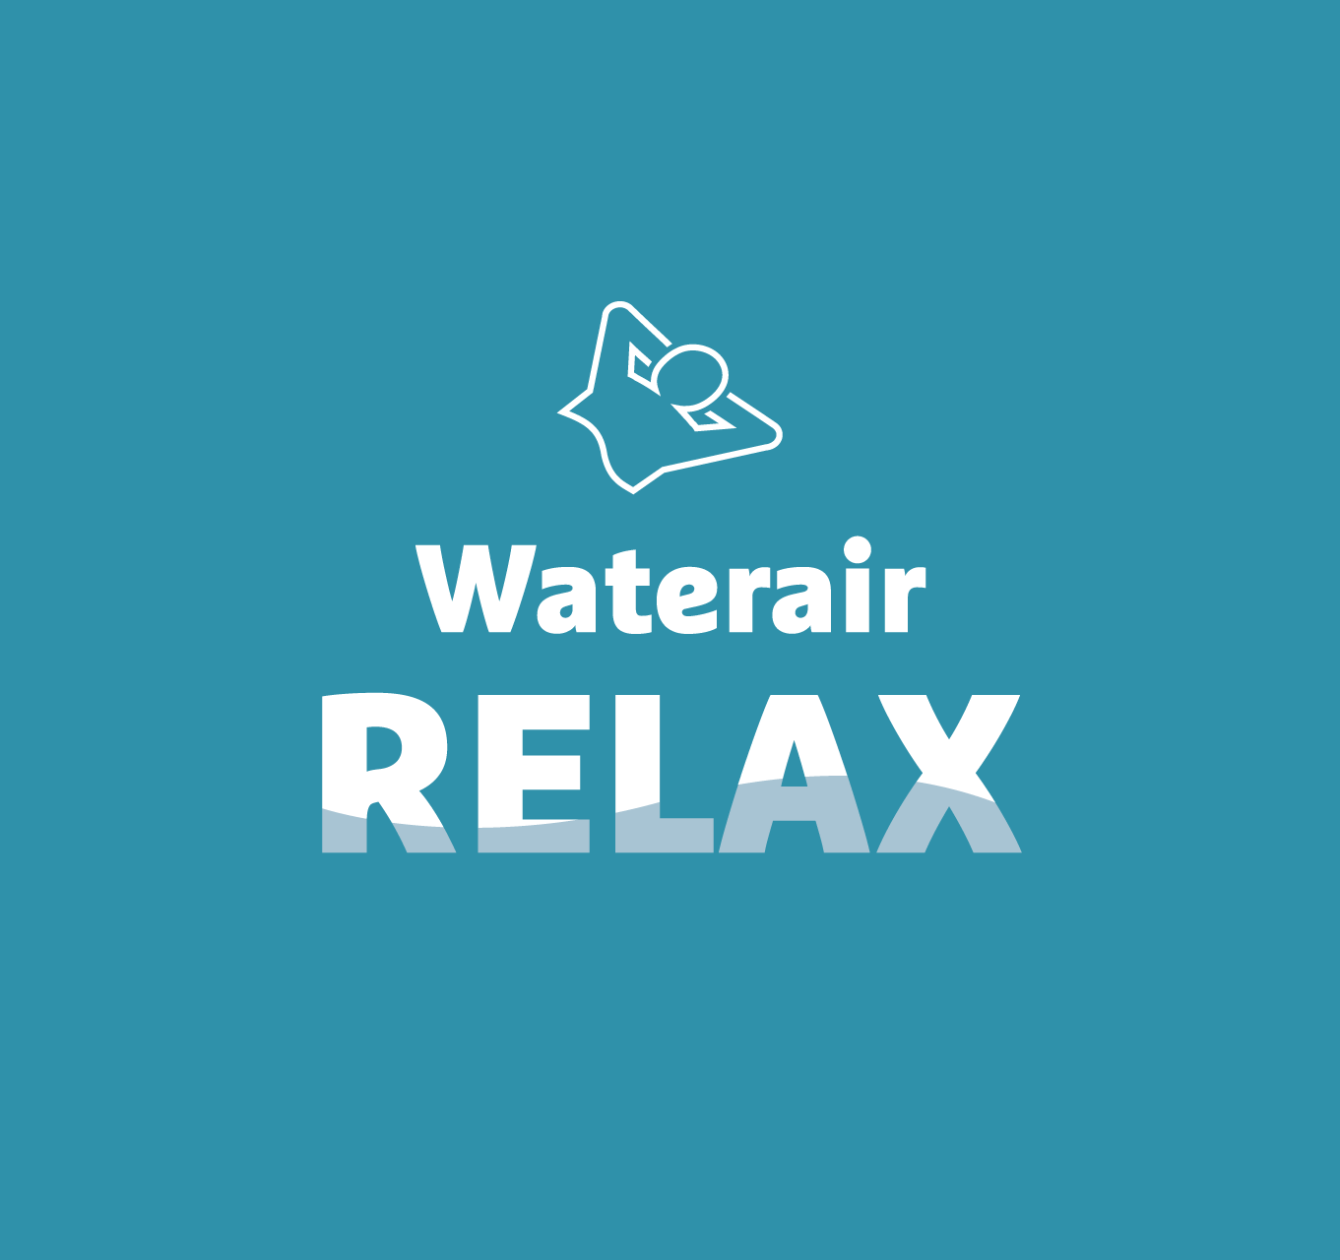 Waterair Relax: uw makkelijk te onderhouden zwembad